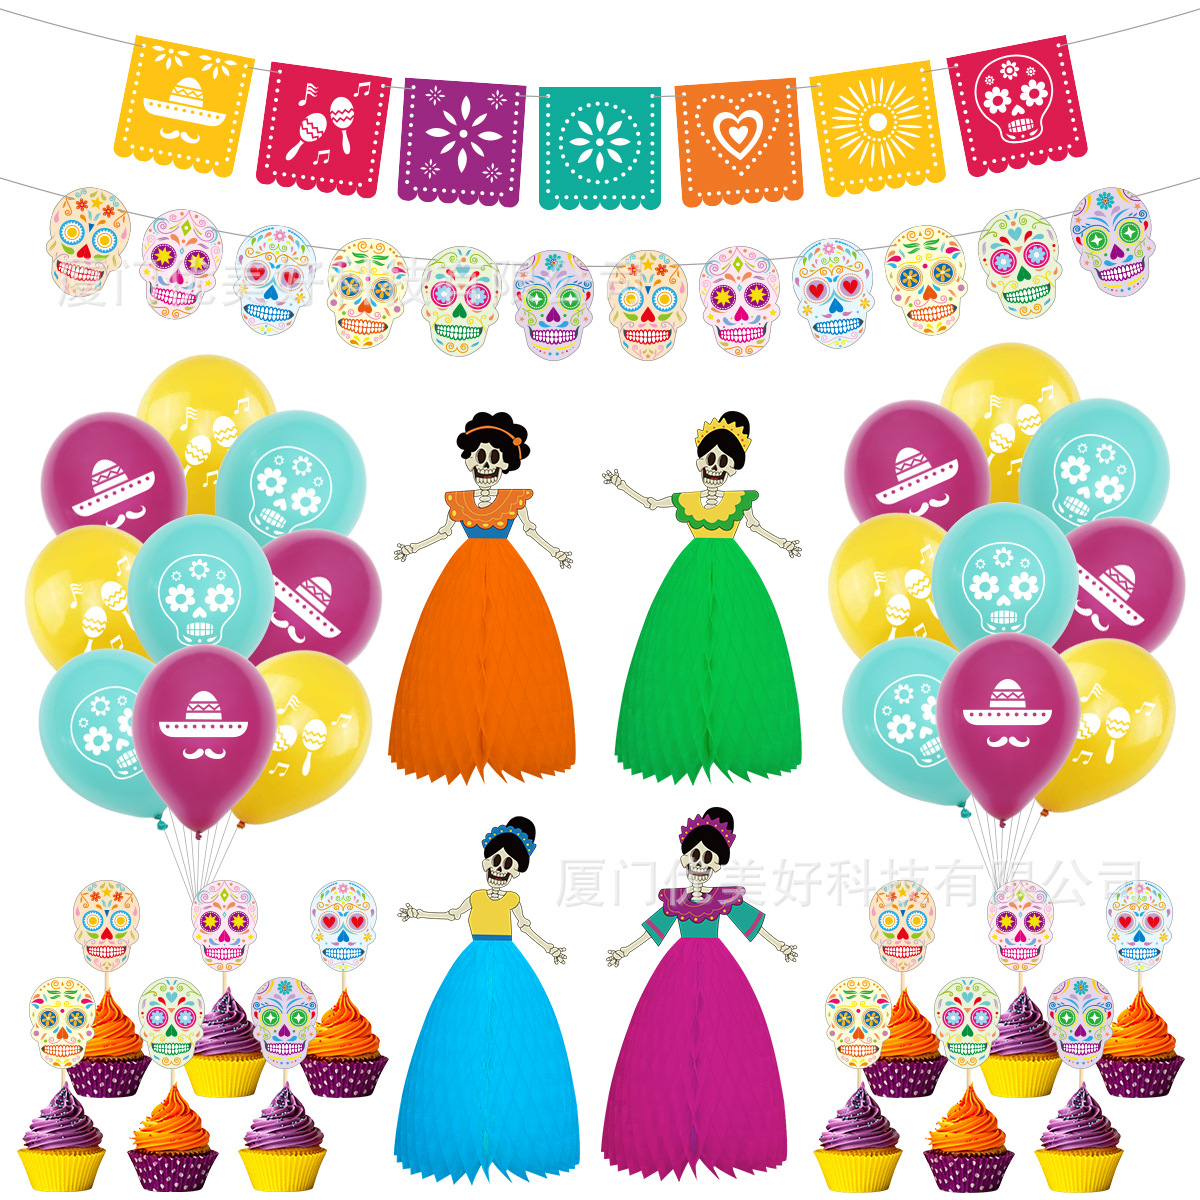 墨西哥亡灵节主题派对装饰节日剪纸面具拉旗骷髅新娘蜂窝插旗气球